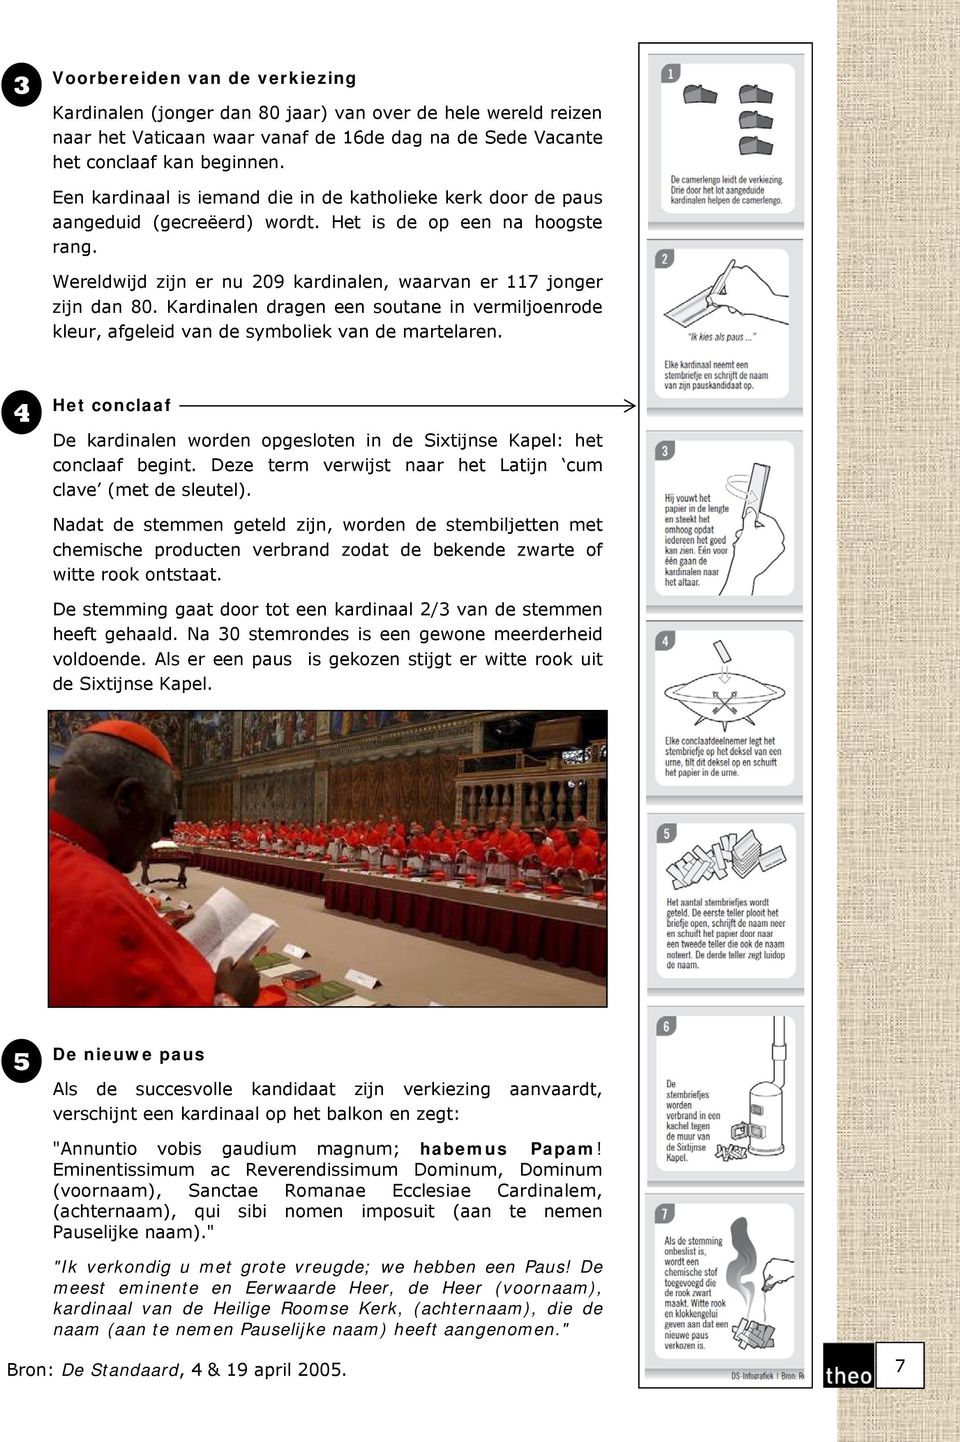 Kardinalen dragen een soutane in vermiljoenrode kleur, afgeleid van de symboliek van de martelaren. 4 Het conclaaf De kardinalen worden opgesloten in de Sixtijnse Kapel: het conclaaf begint.